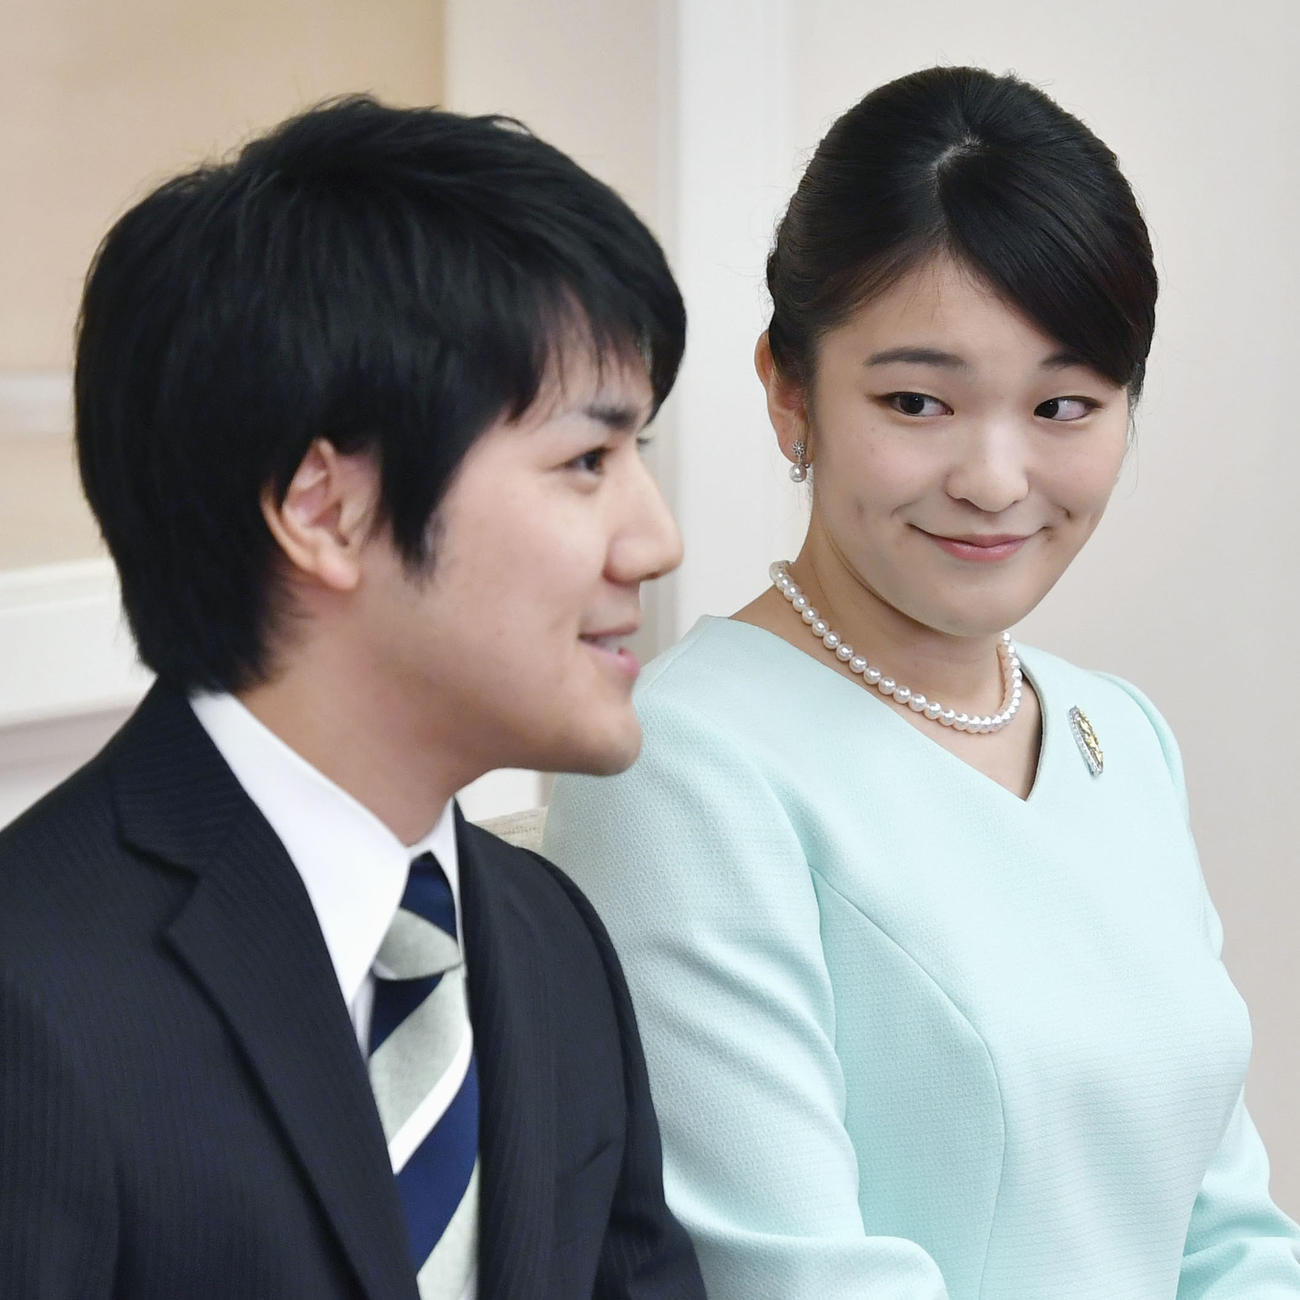 17年9月、婚約内定記者会見で小室圭さんを見つめられる眞子さま